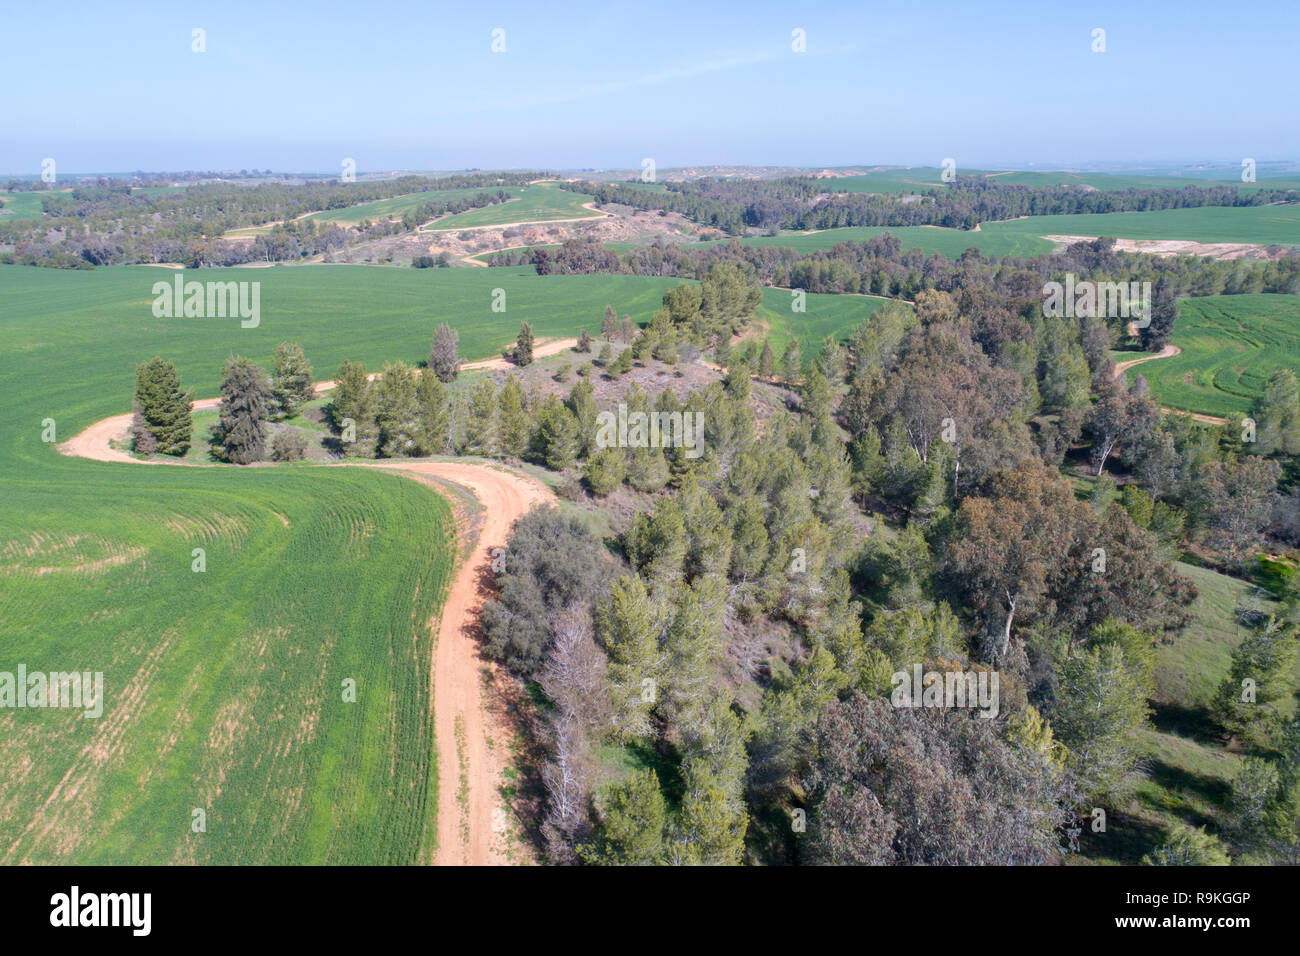 Vue aérienne des terres agricoles et la nature dans le centre d'Israël le long du ruisseau Yarkon. Photographié en hiver en Février Banque D'Images